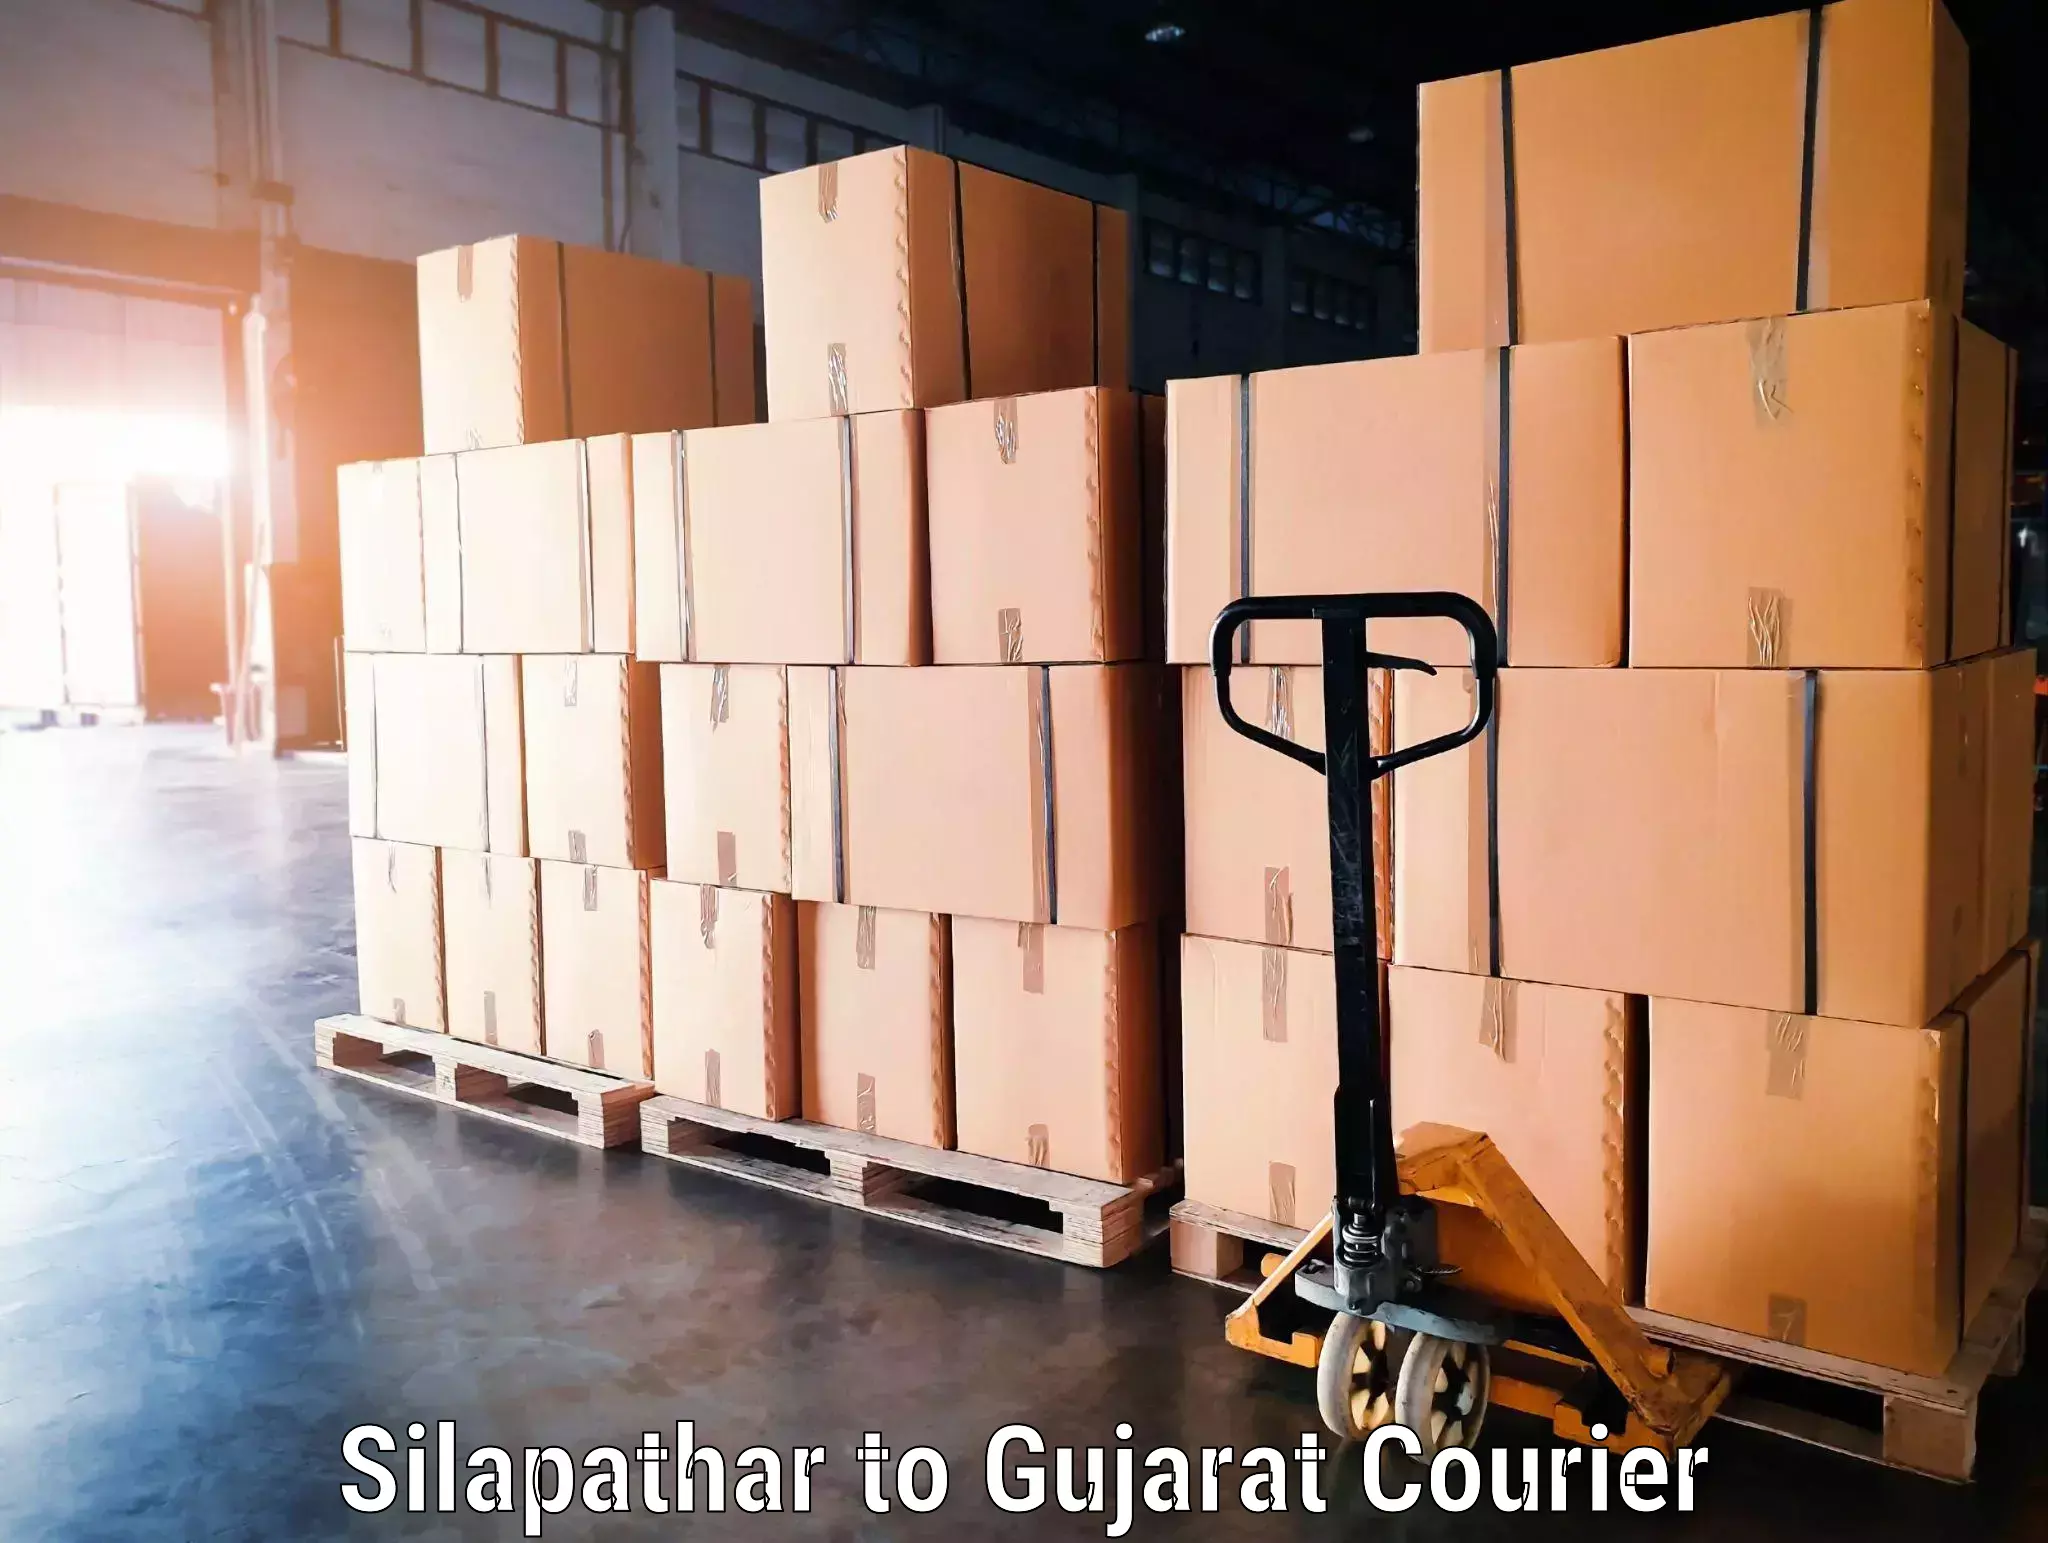 Baggage transport scheduler Silapathar to Gujarat